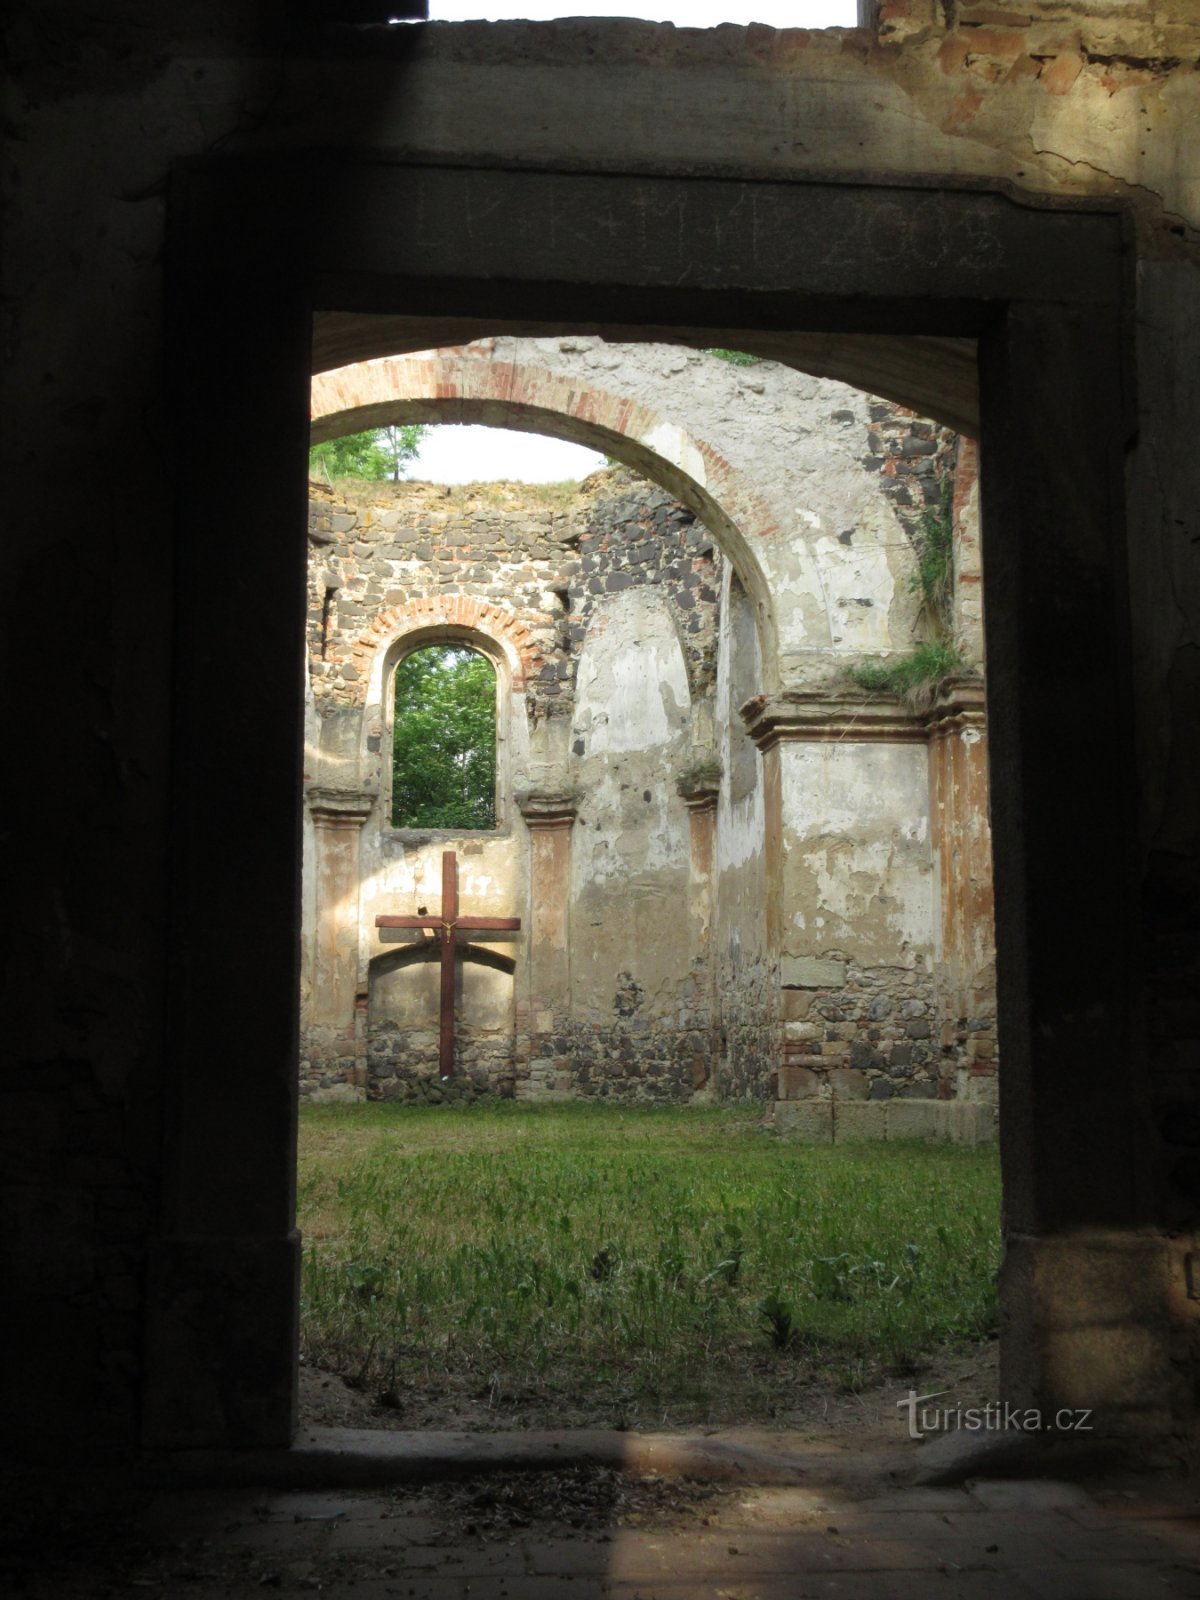 Zlovědice - ruinerna av kyrkan St. Michael